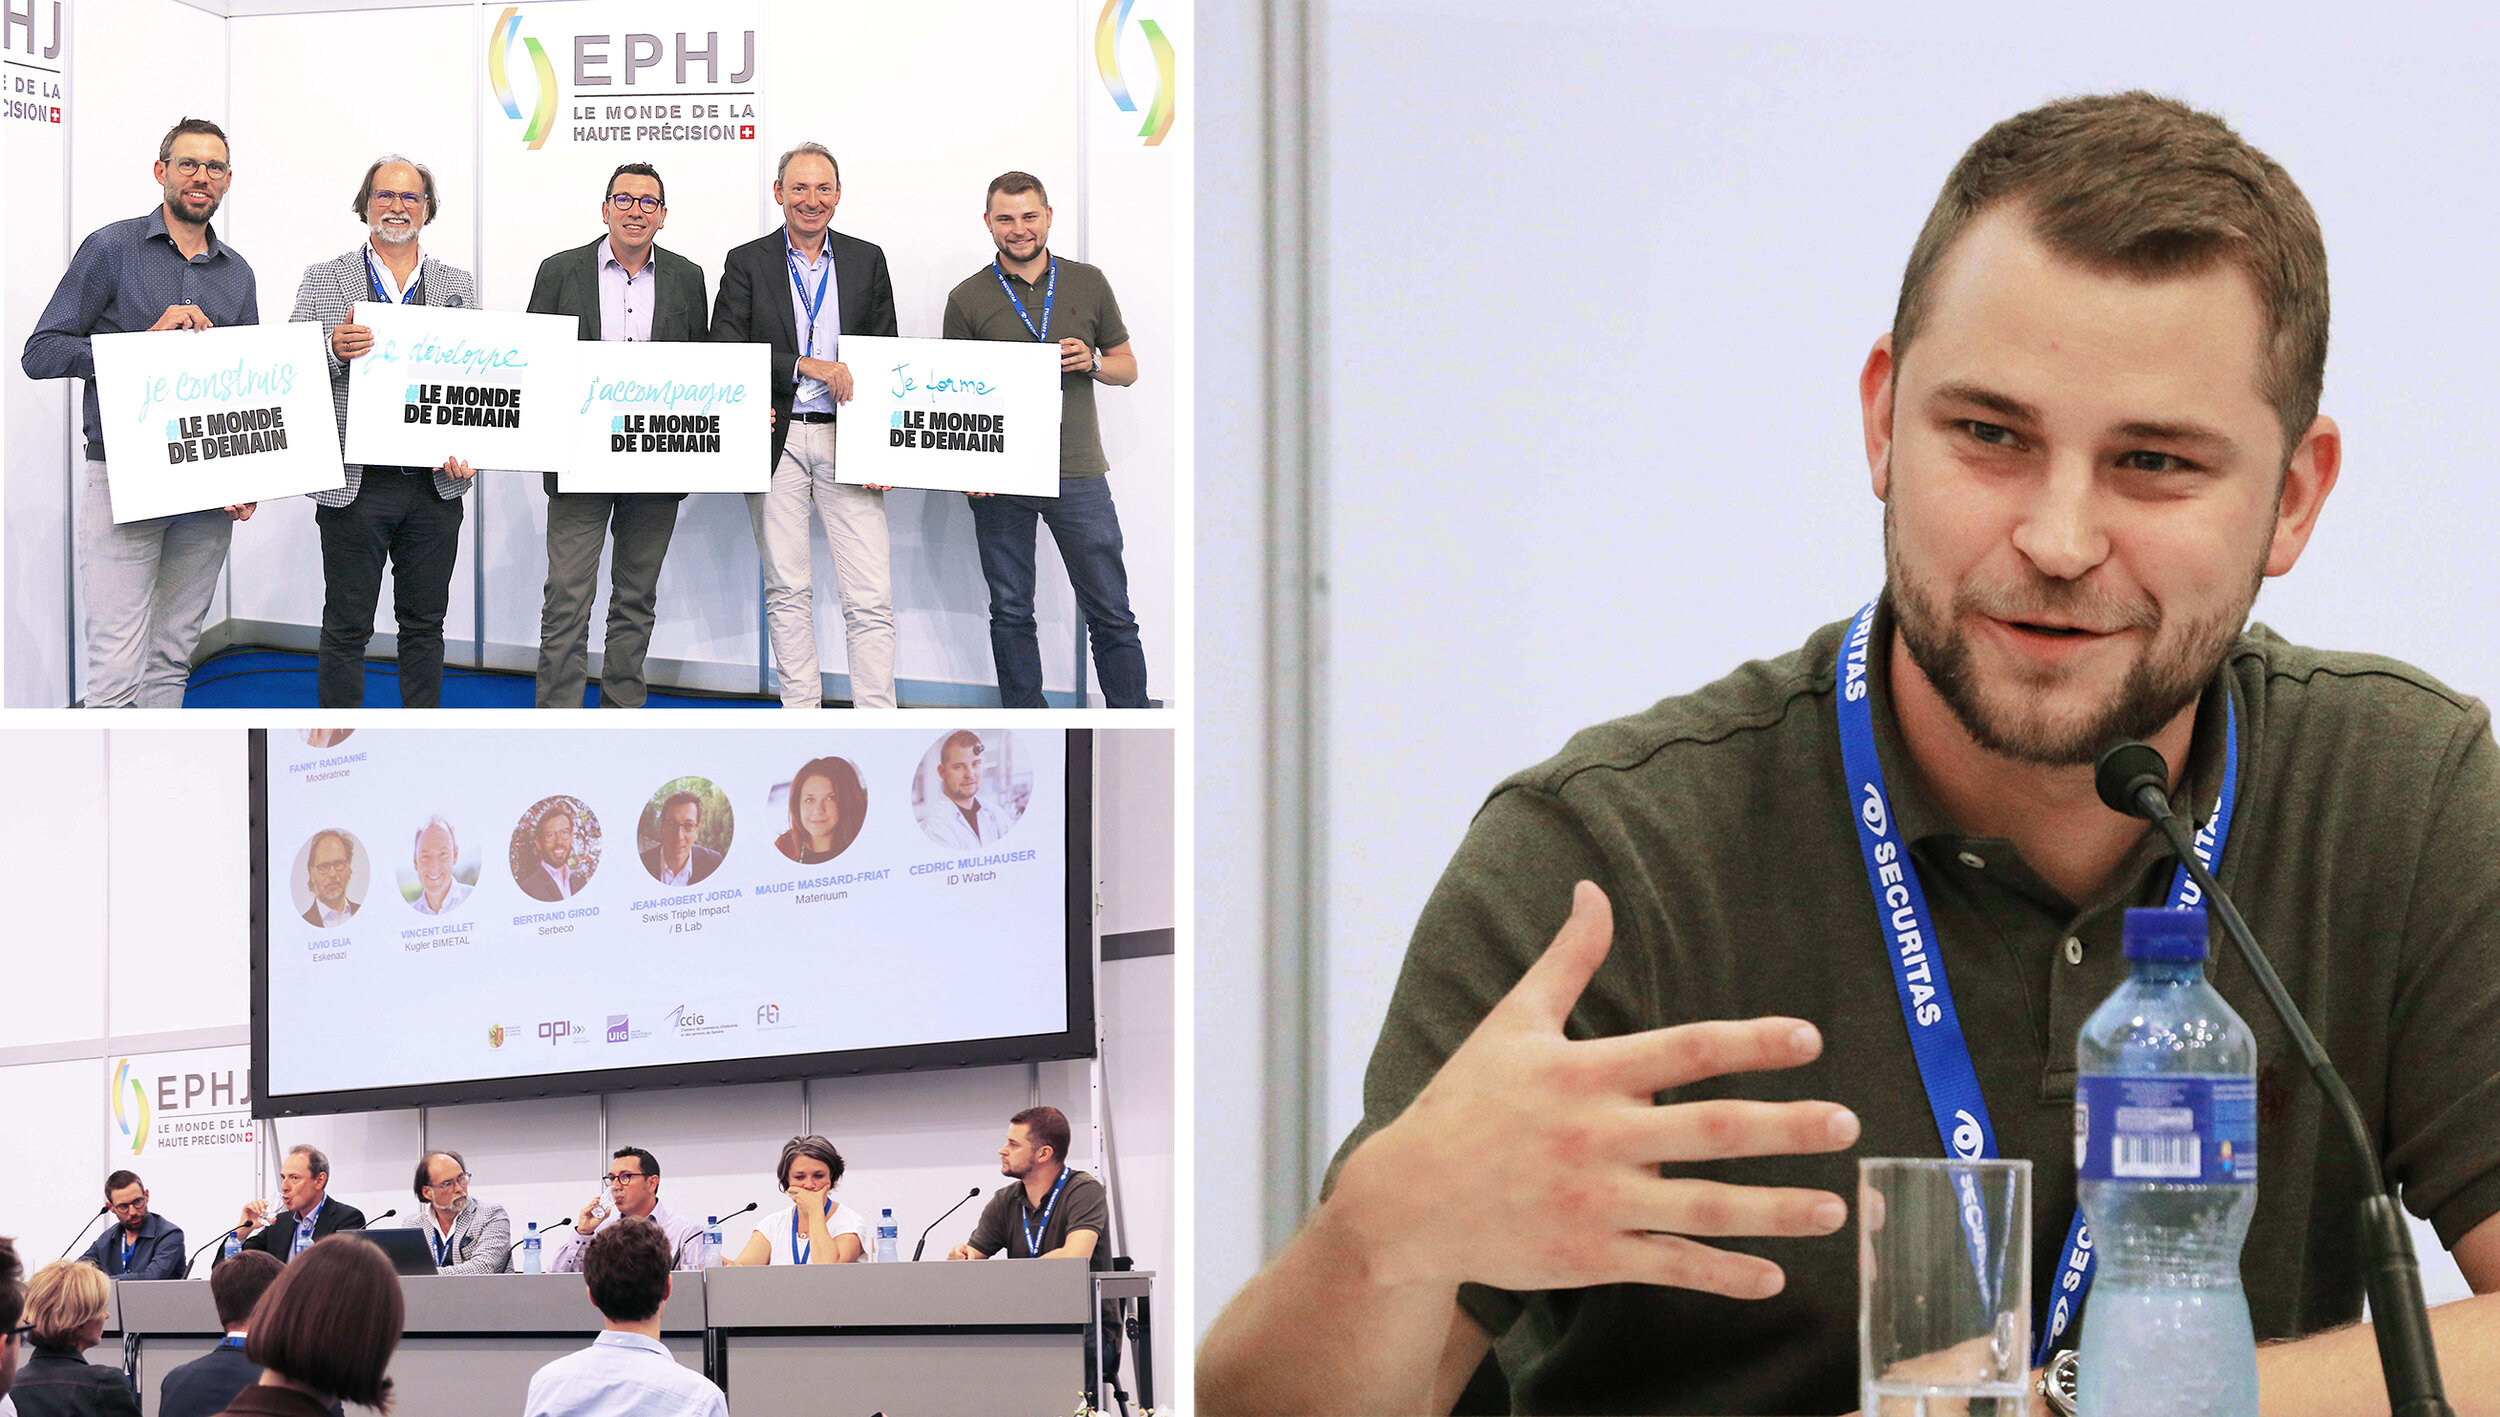 16 septembre - Genève - Table ronde lors de l'EPHJ "Production industrielle responsable : un savoir-faire genevois" organisée par Industries-Genève et OPI industries technologies.